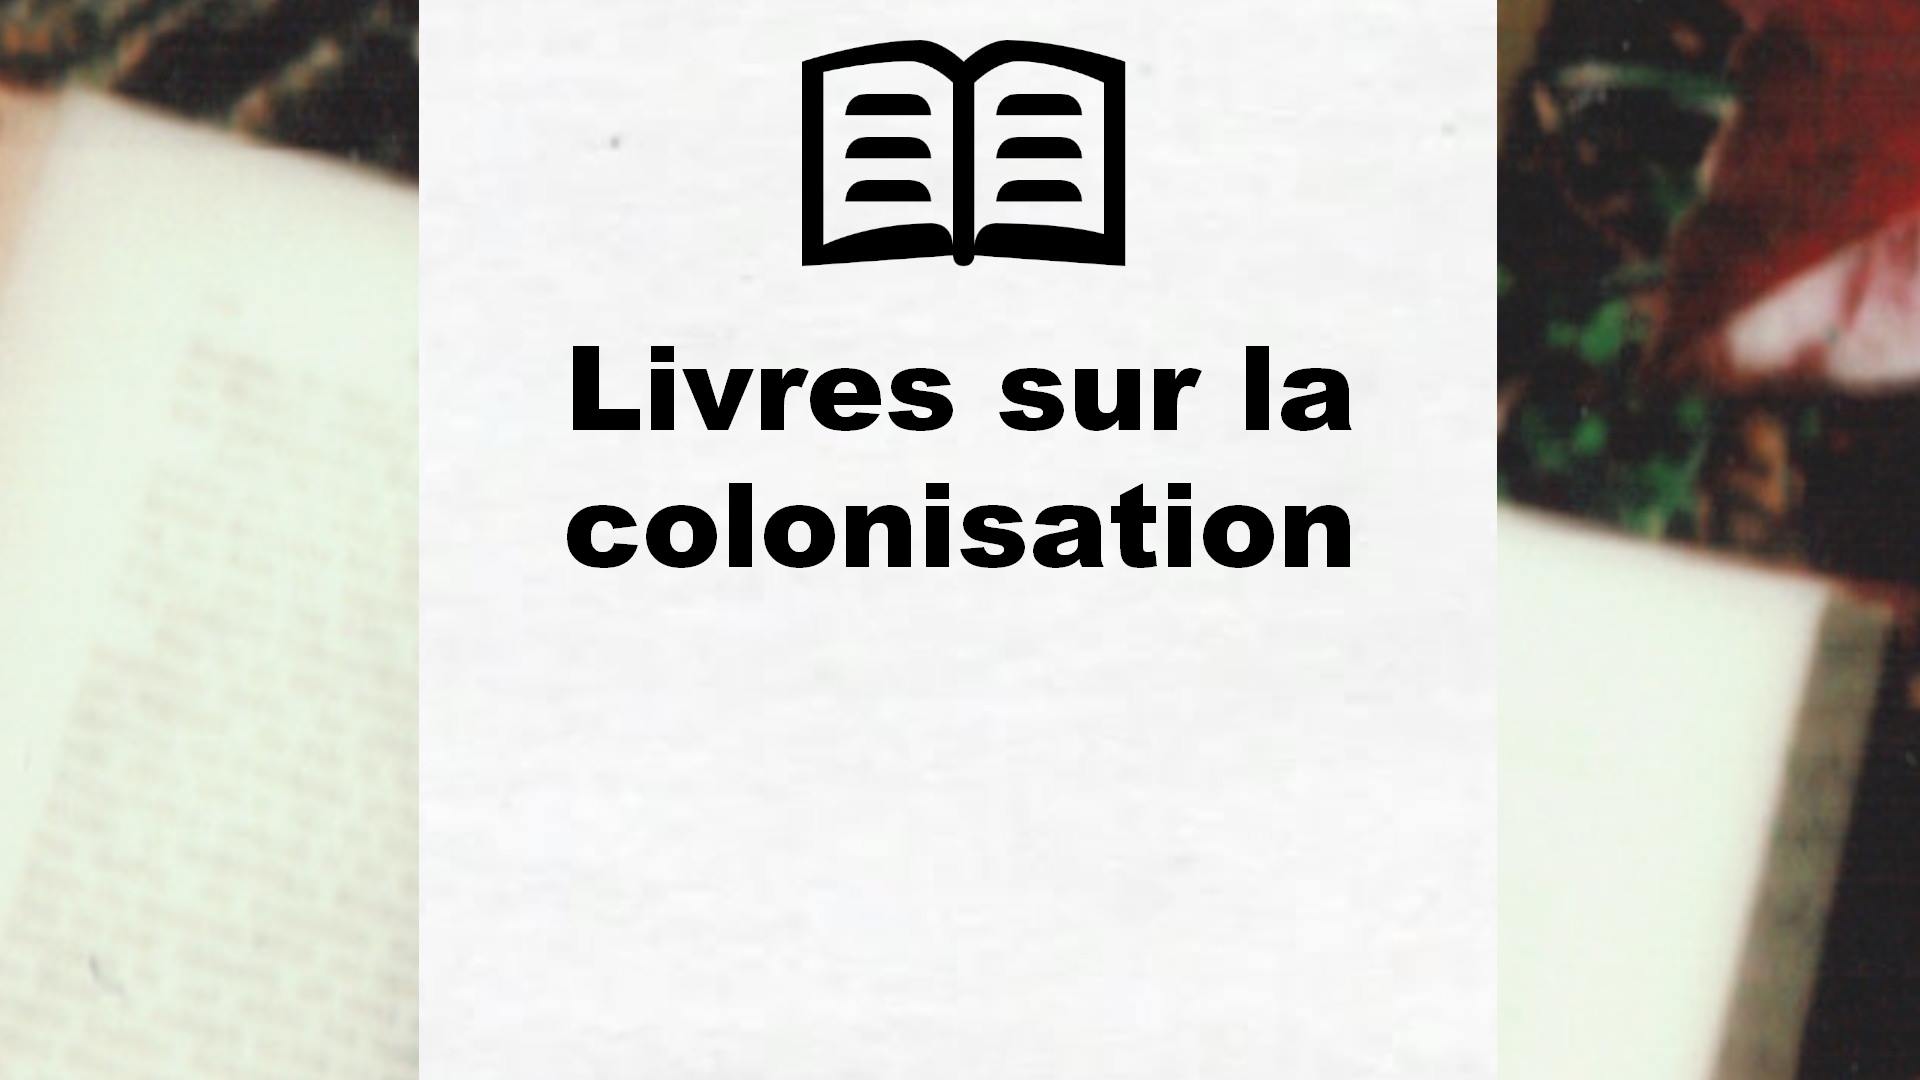 Livres sur la colonisation